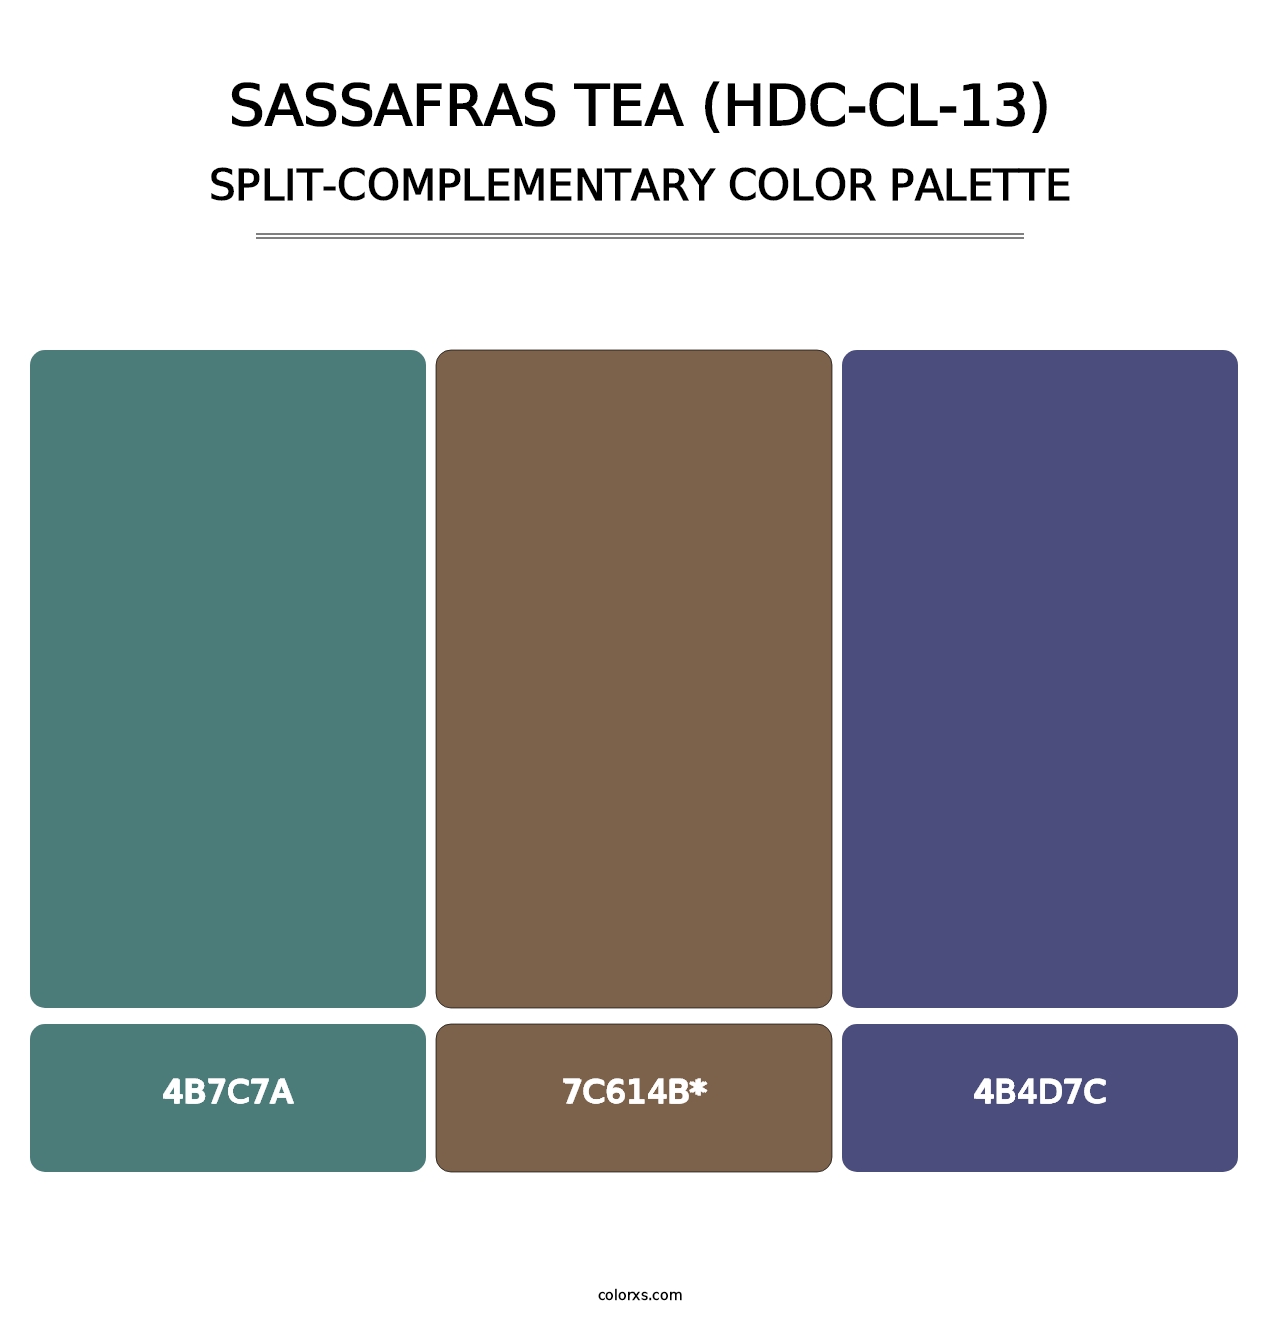 Sassafras Tea (HDC-CL-13) - Split-Complementary Color Palette